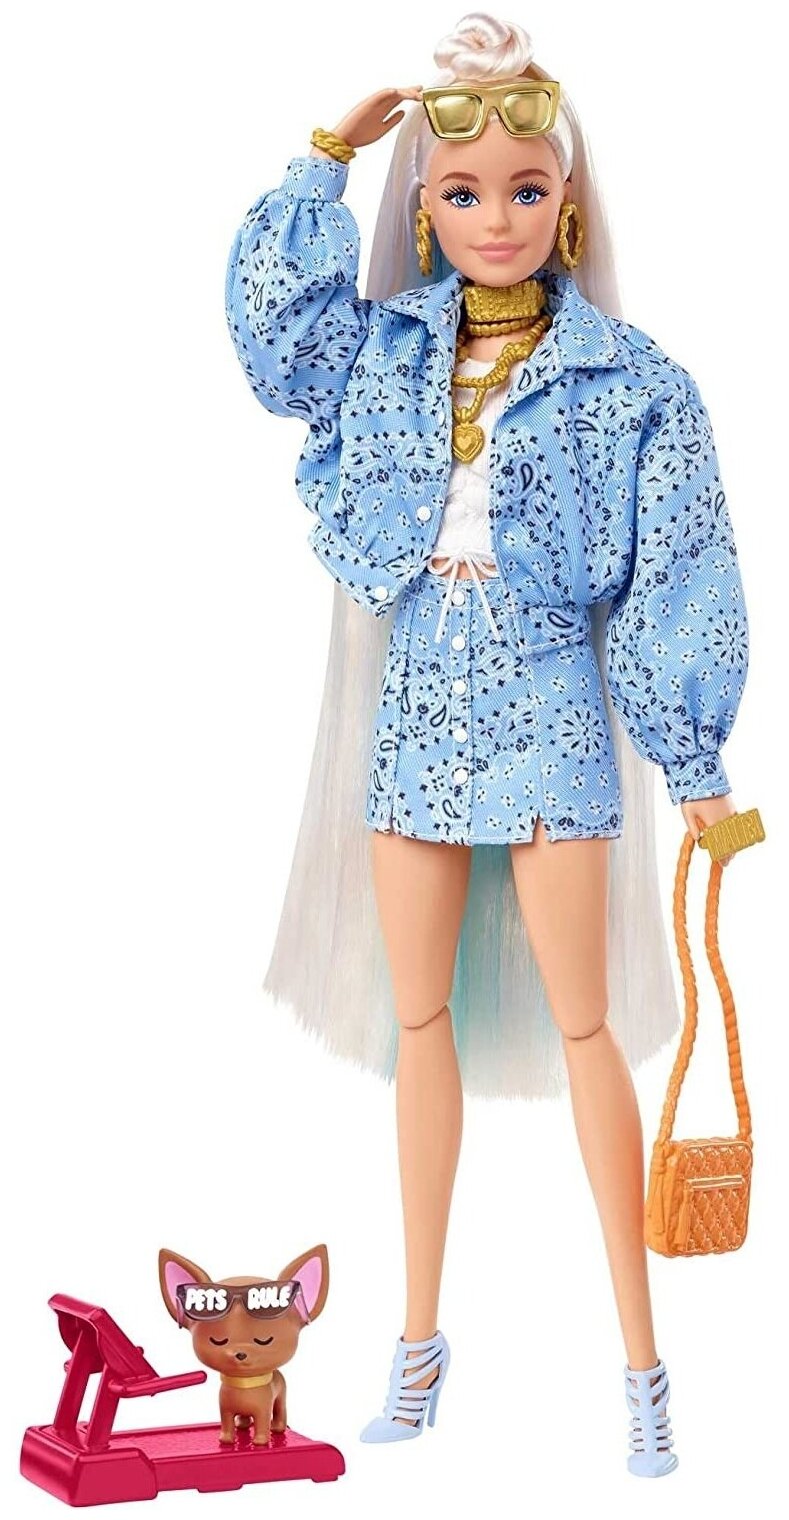 HHN08 Игровой набор Barbie EXTRA - Кукла Барби с 15 модными аксессуарами и фигуркой собачки (материал: пластик, текстиль), серия EXTRA, возраст 3+